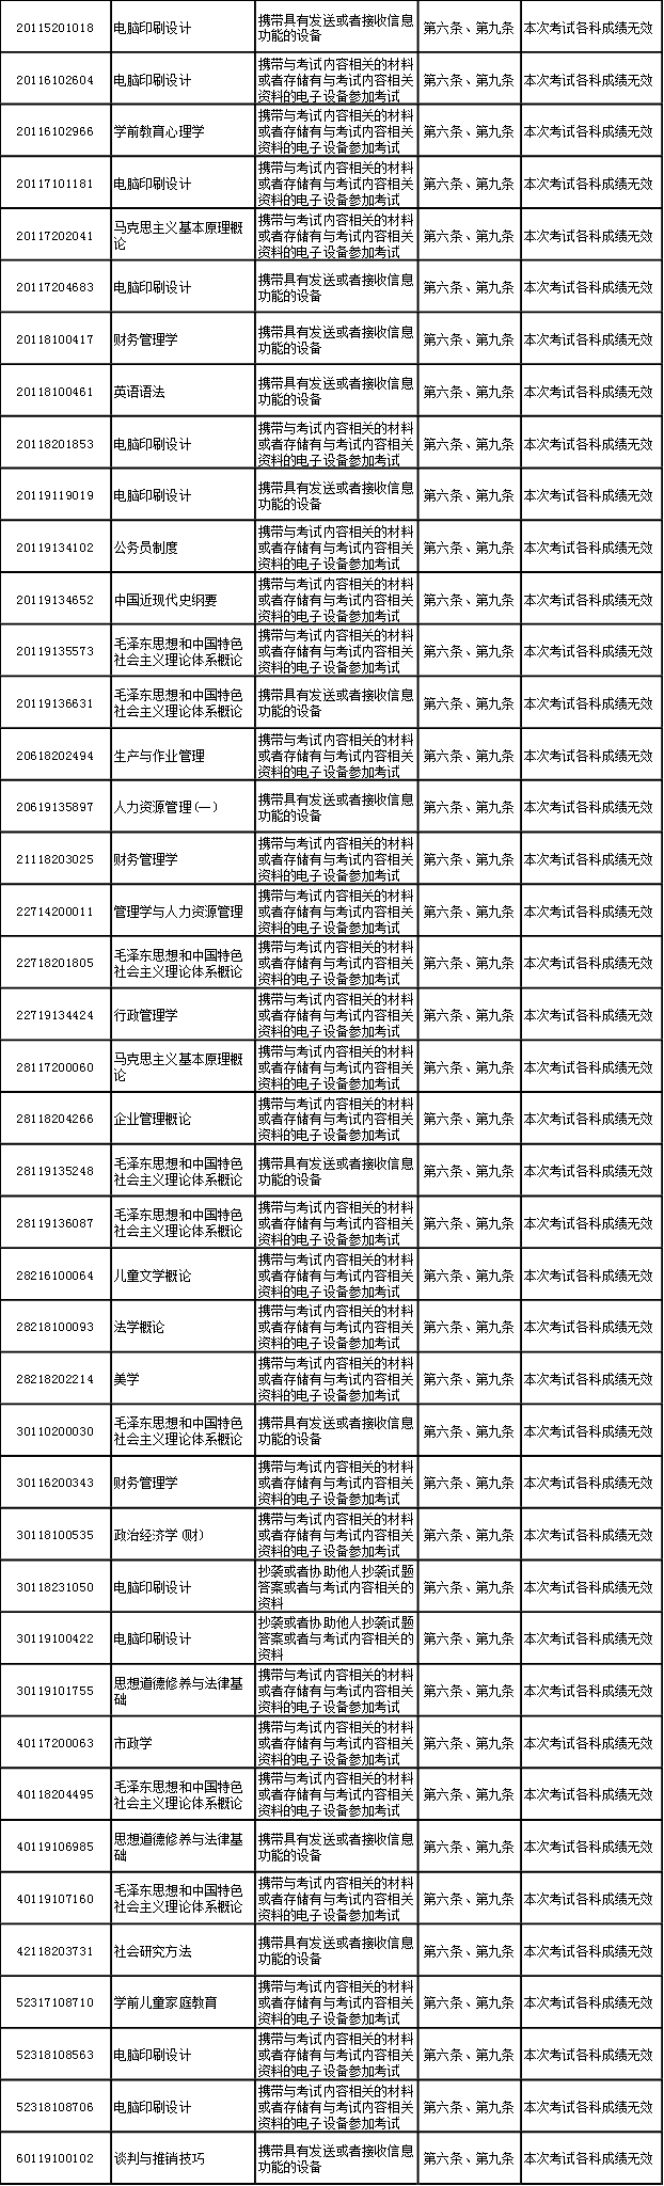 浙江省2019年04月自学考试违规公告.png